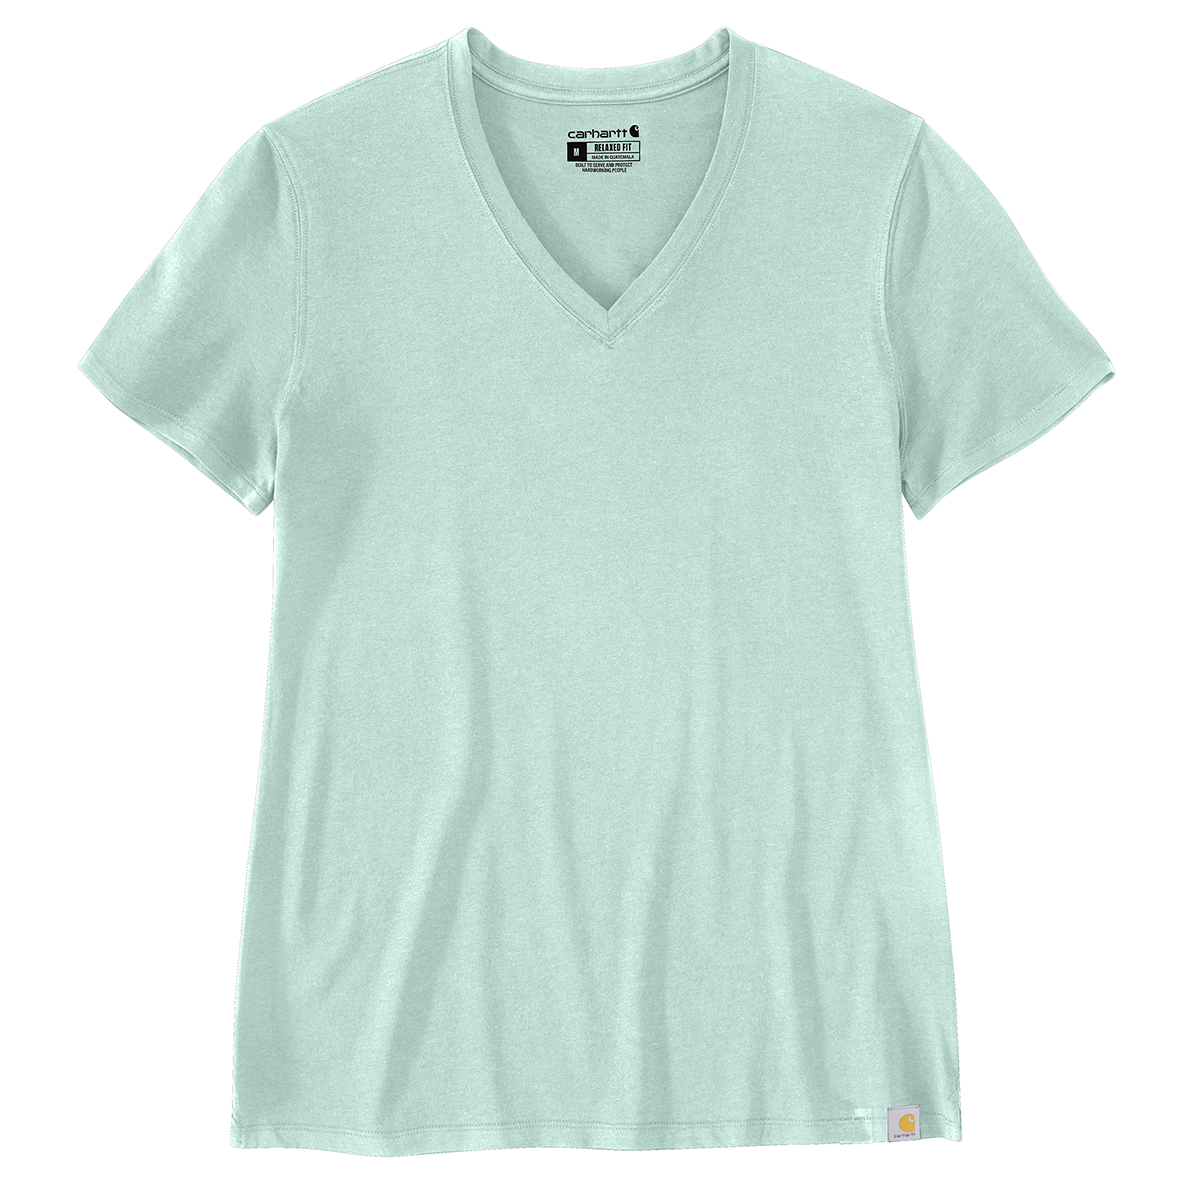 Carhartt Women's 105739 Relaxed Fit Lightweight Short-Sleeve V-Neck T-Shirt, Blue